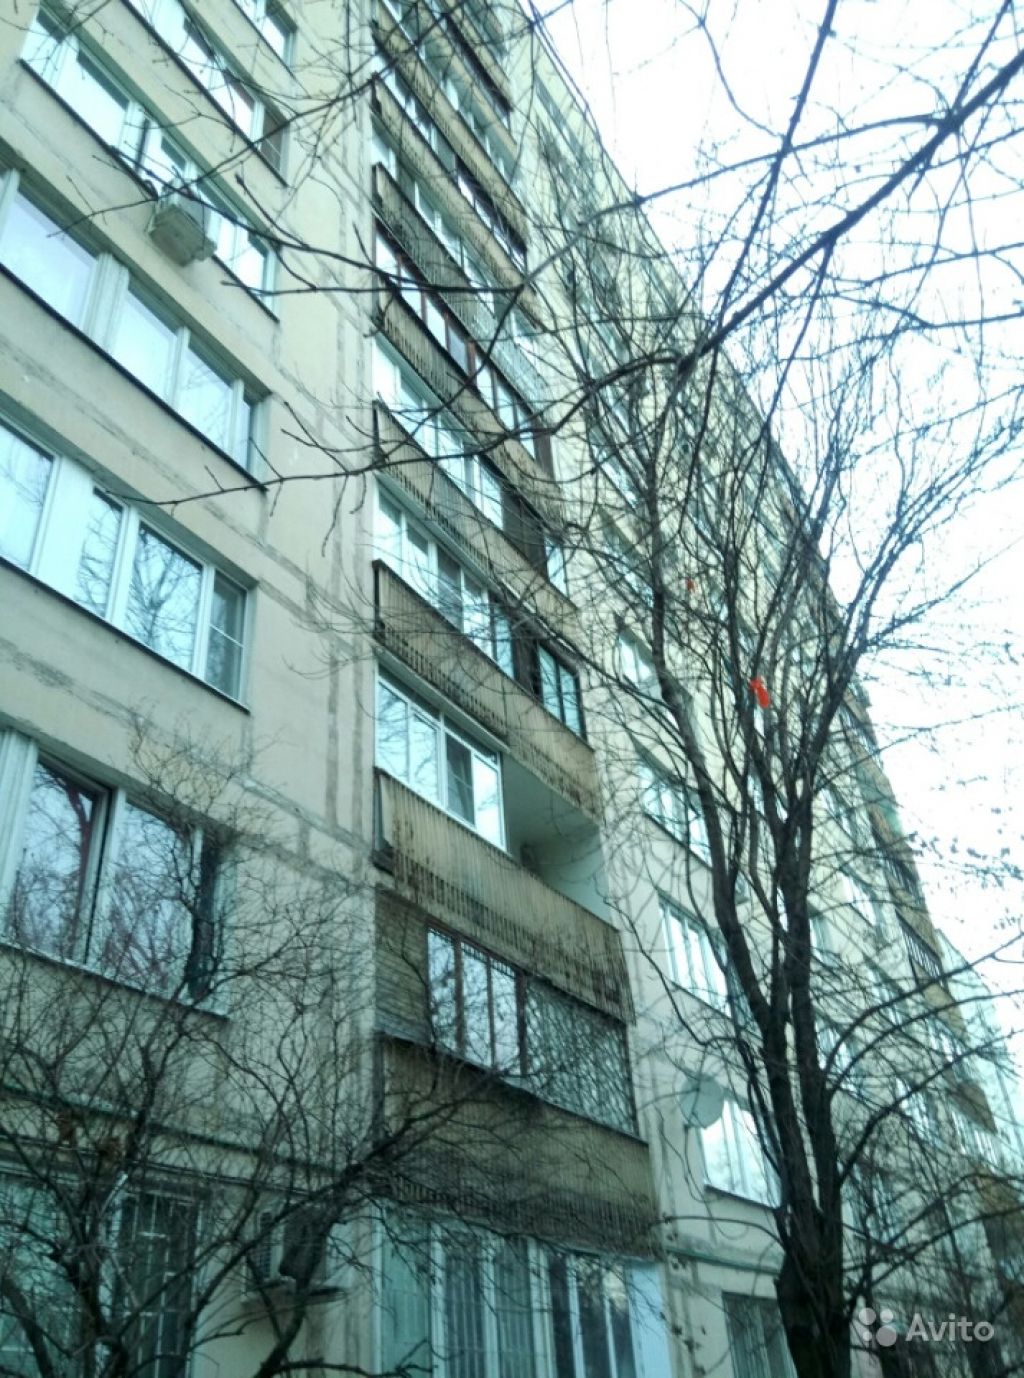 Продам квартиру 2-к квартира 51.3 м² на 6 этаже 12-этажного блочного дома в Москве. Фото 1